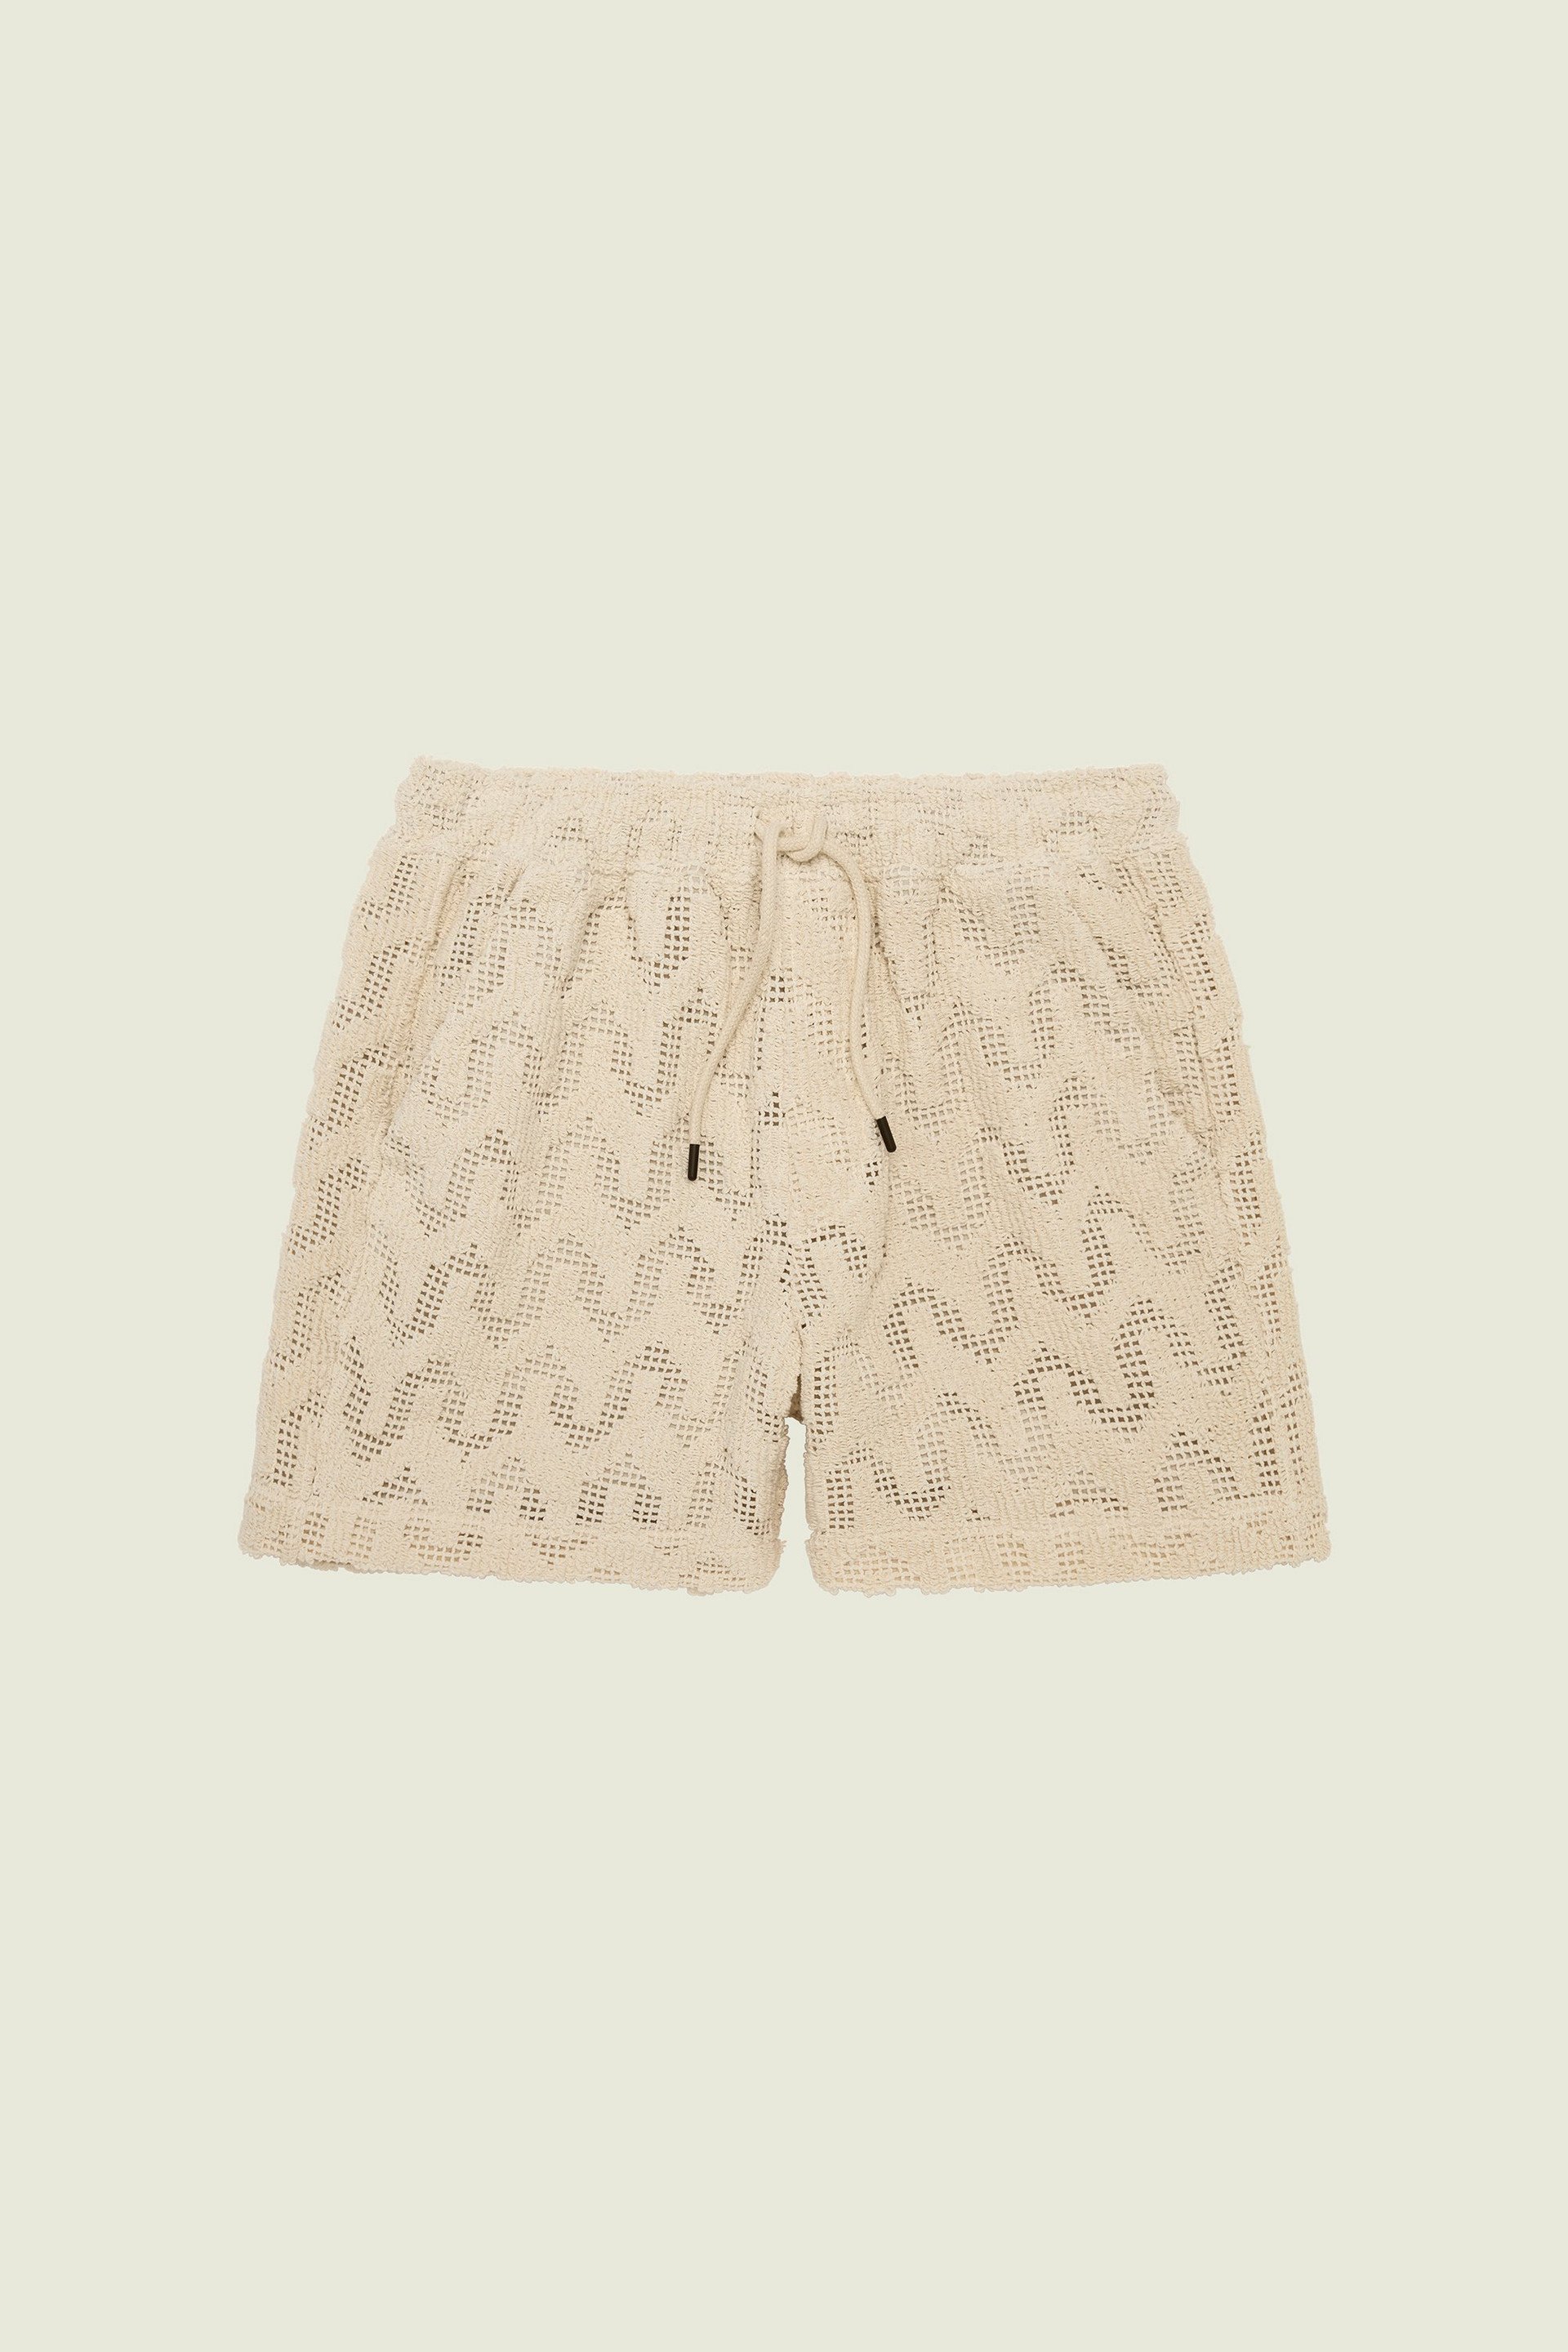 Atlas Crochet Shorts